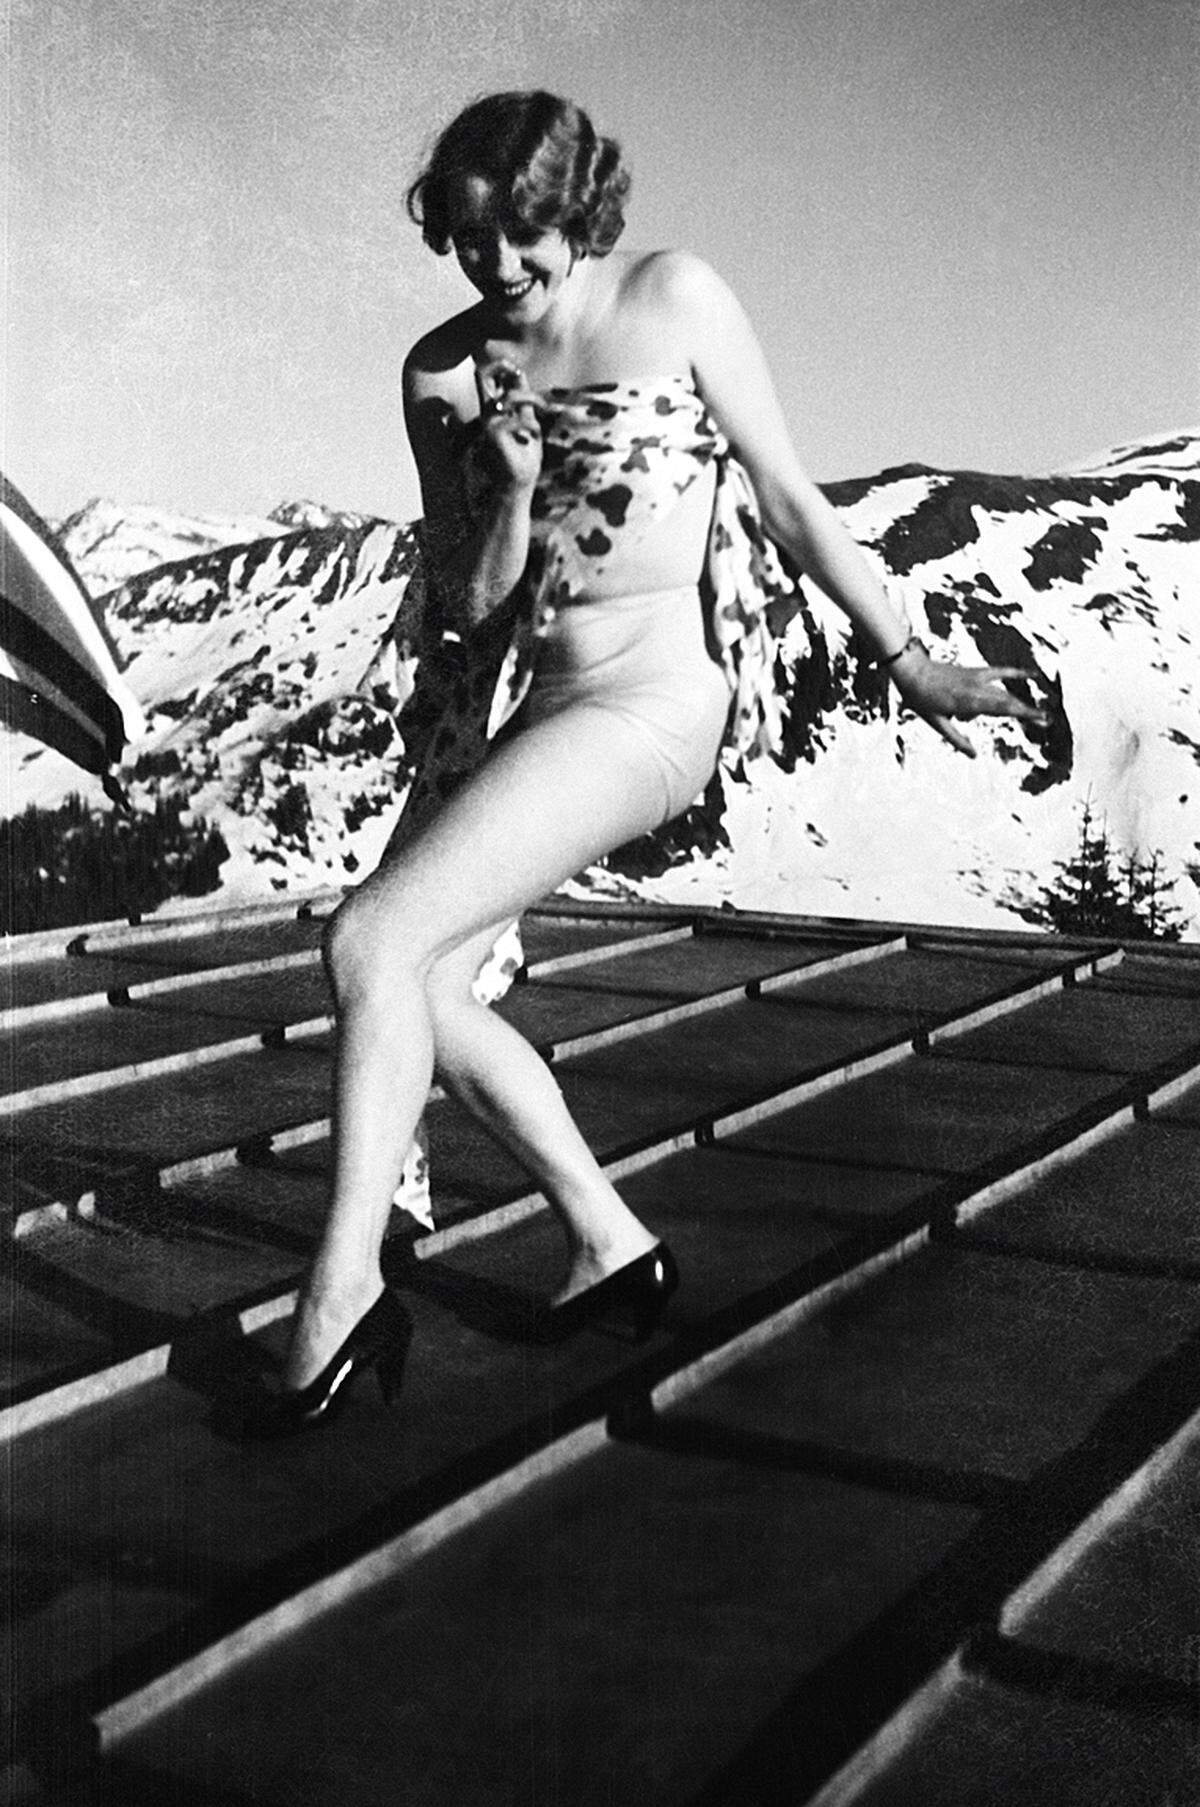 Ende der 1930er Jahre wurde die Freikörperkultur modern, und so traf Walde durchaus auf interessierte Modelle, die gerade nackt ein Sonnenbad nahmen oder Gymnastik betrieben. Alfons Walde: "Xenia", April 1932